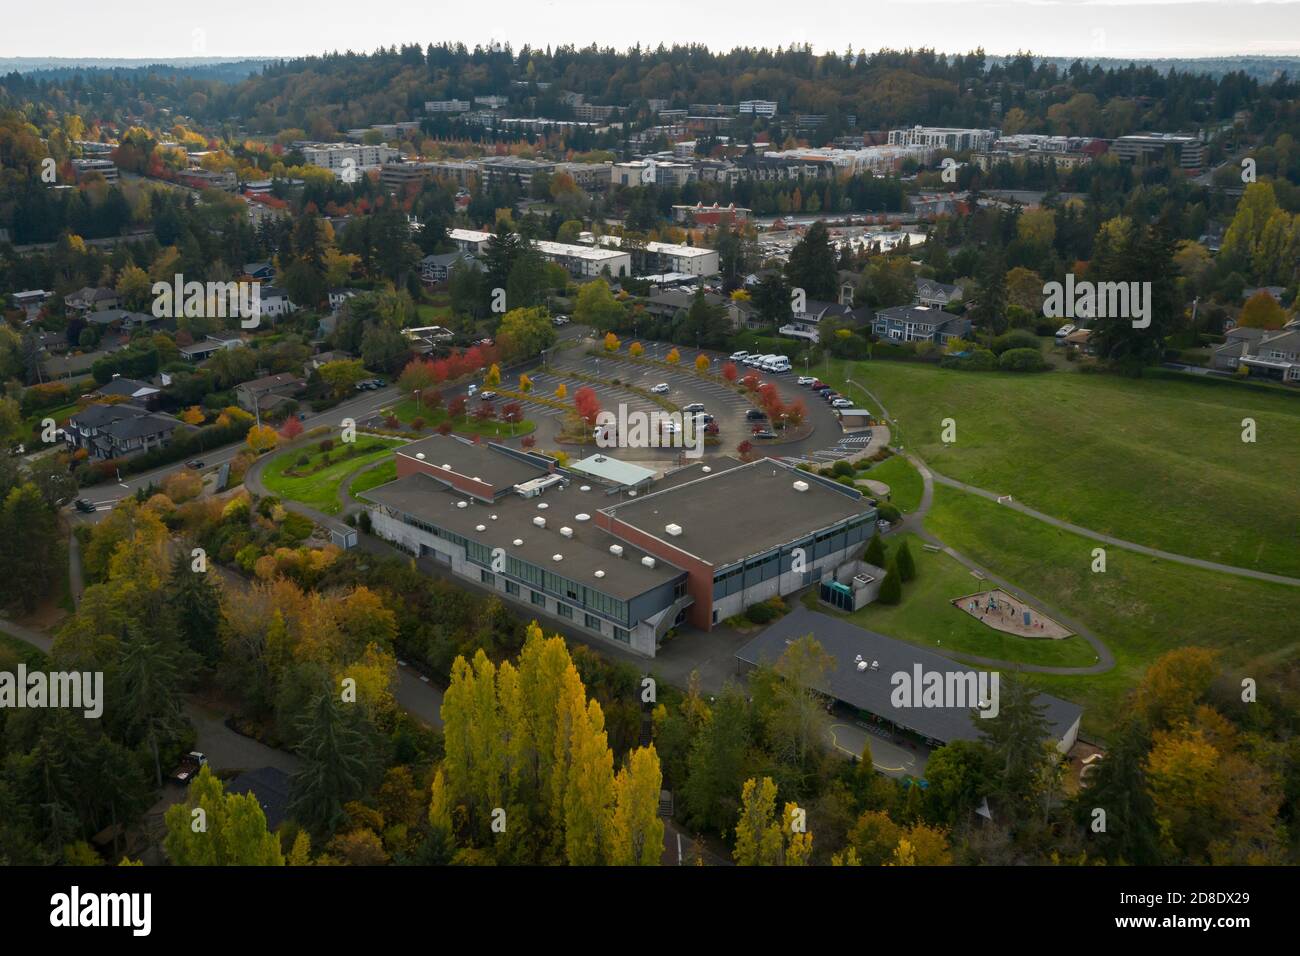 Luftaufnahme des Mercer Island Community & Event Center vom Luther Burbank Park auf Mercer Island, Washington. Stockfoto